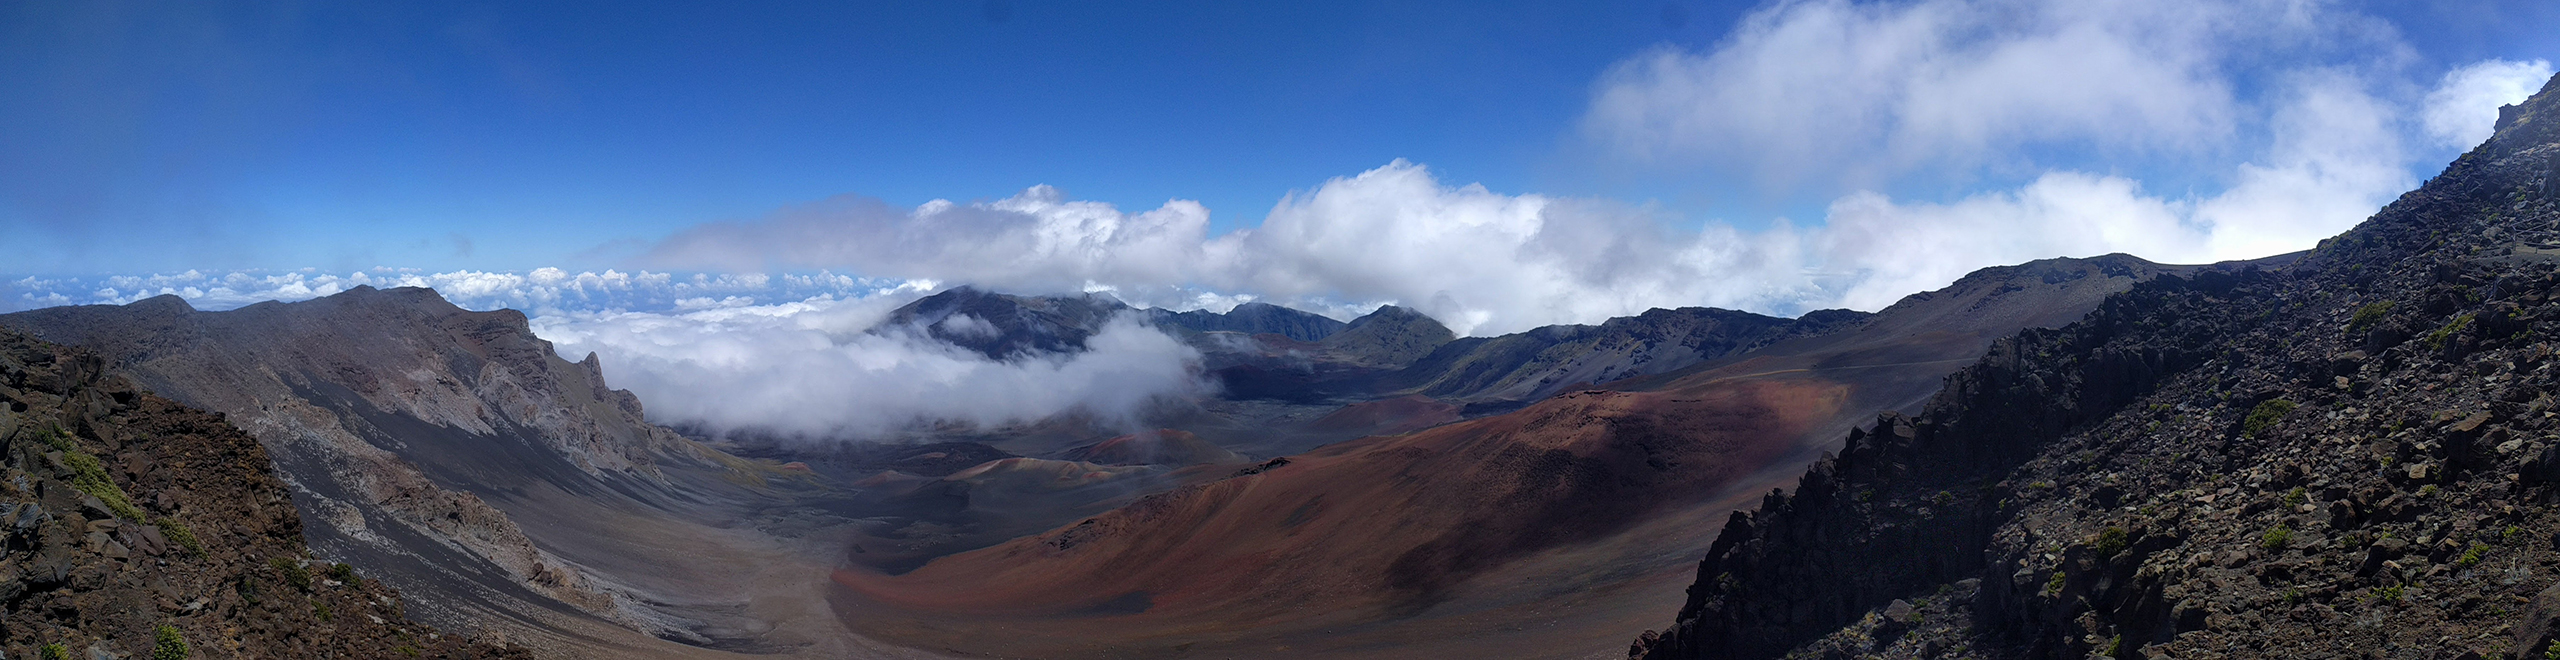 Panorama auf dem Haleakala